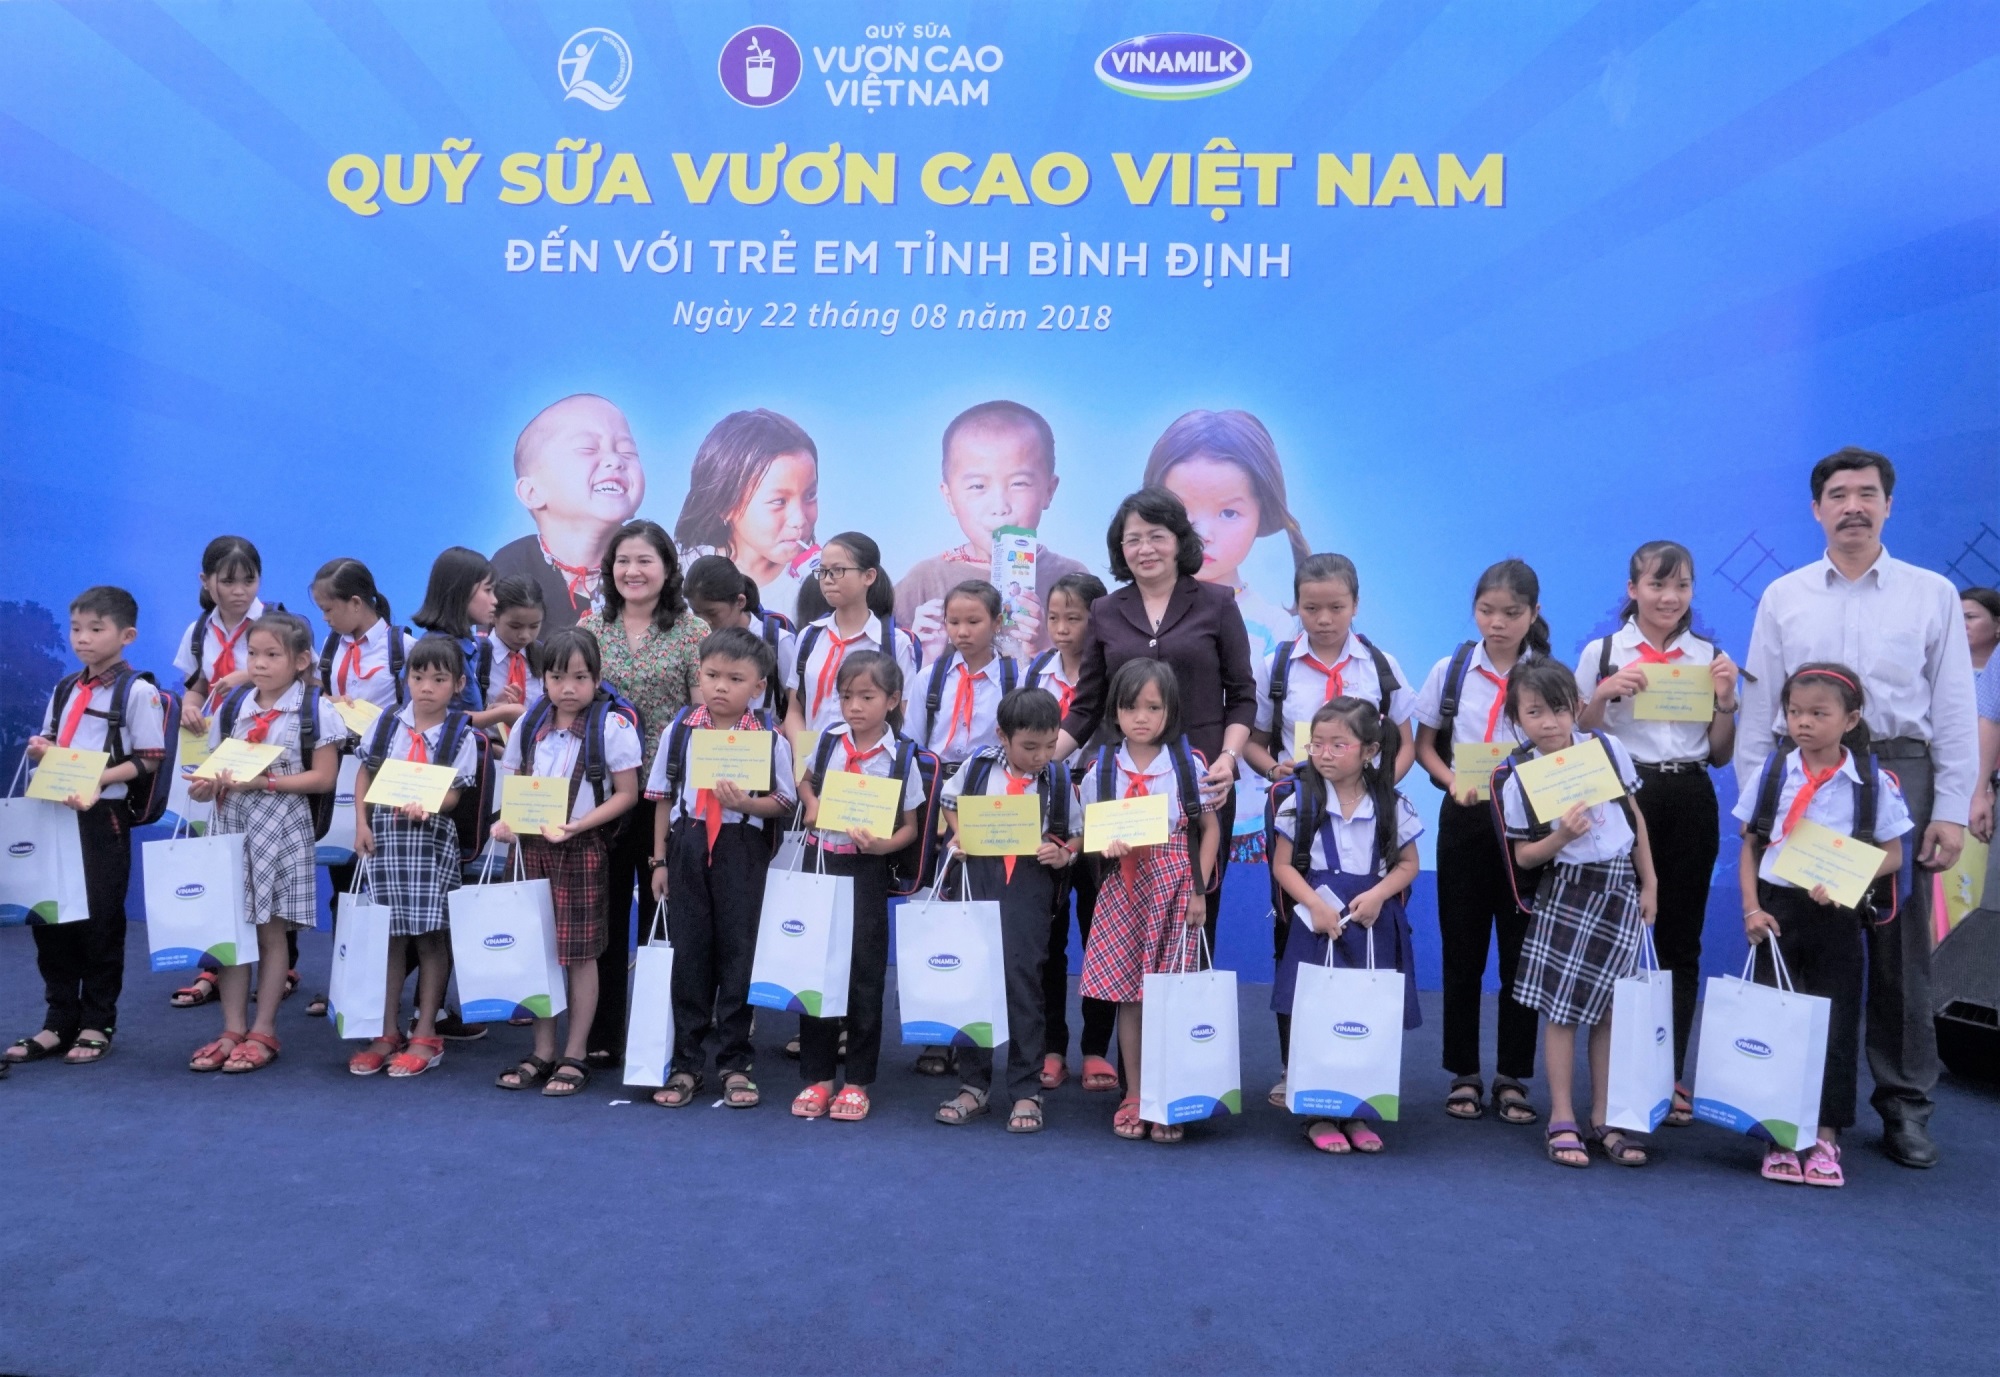 Quỹ Sữa vươn cao Việt Nam và Vinamilk tiếp tục trao 64.000 ly sữa cho trẻ em tỉnh Bình Định - Ảnh 1